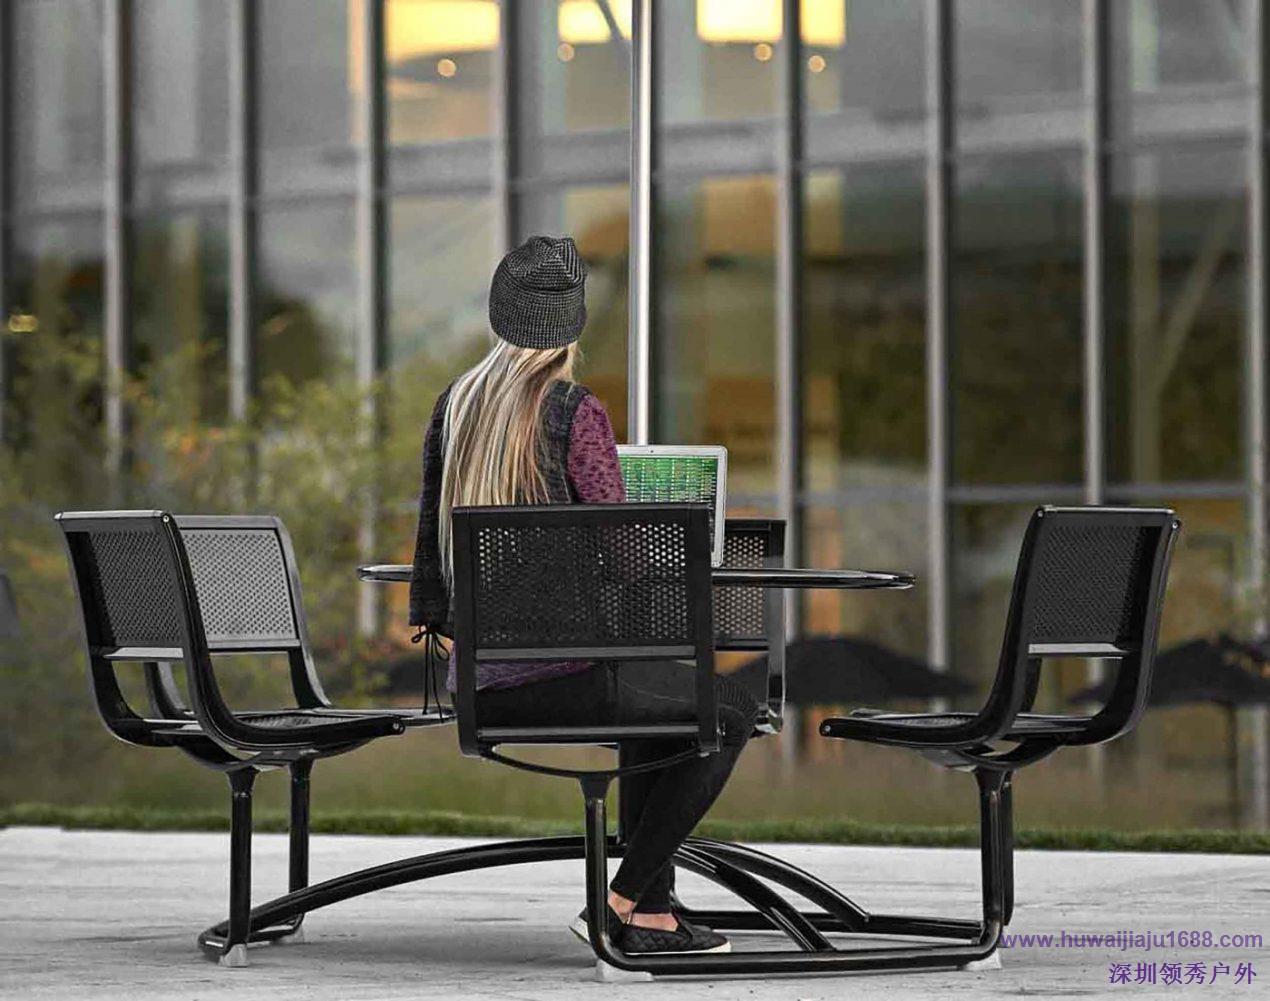 户外休闲椅设计需要以人为本